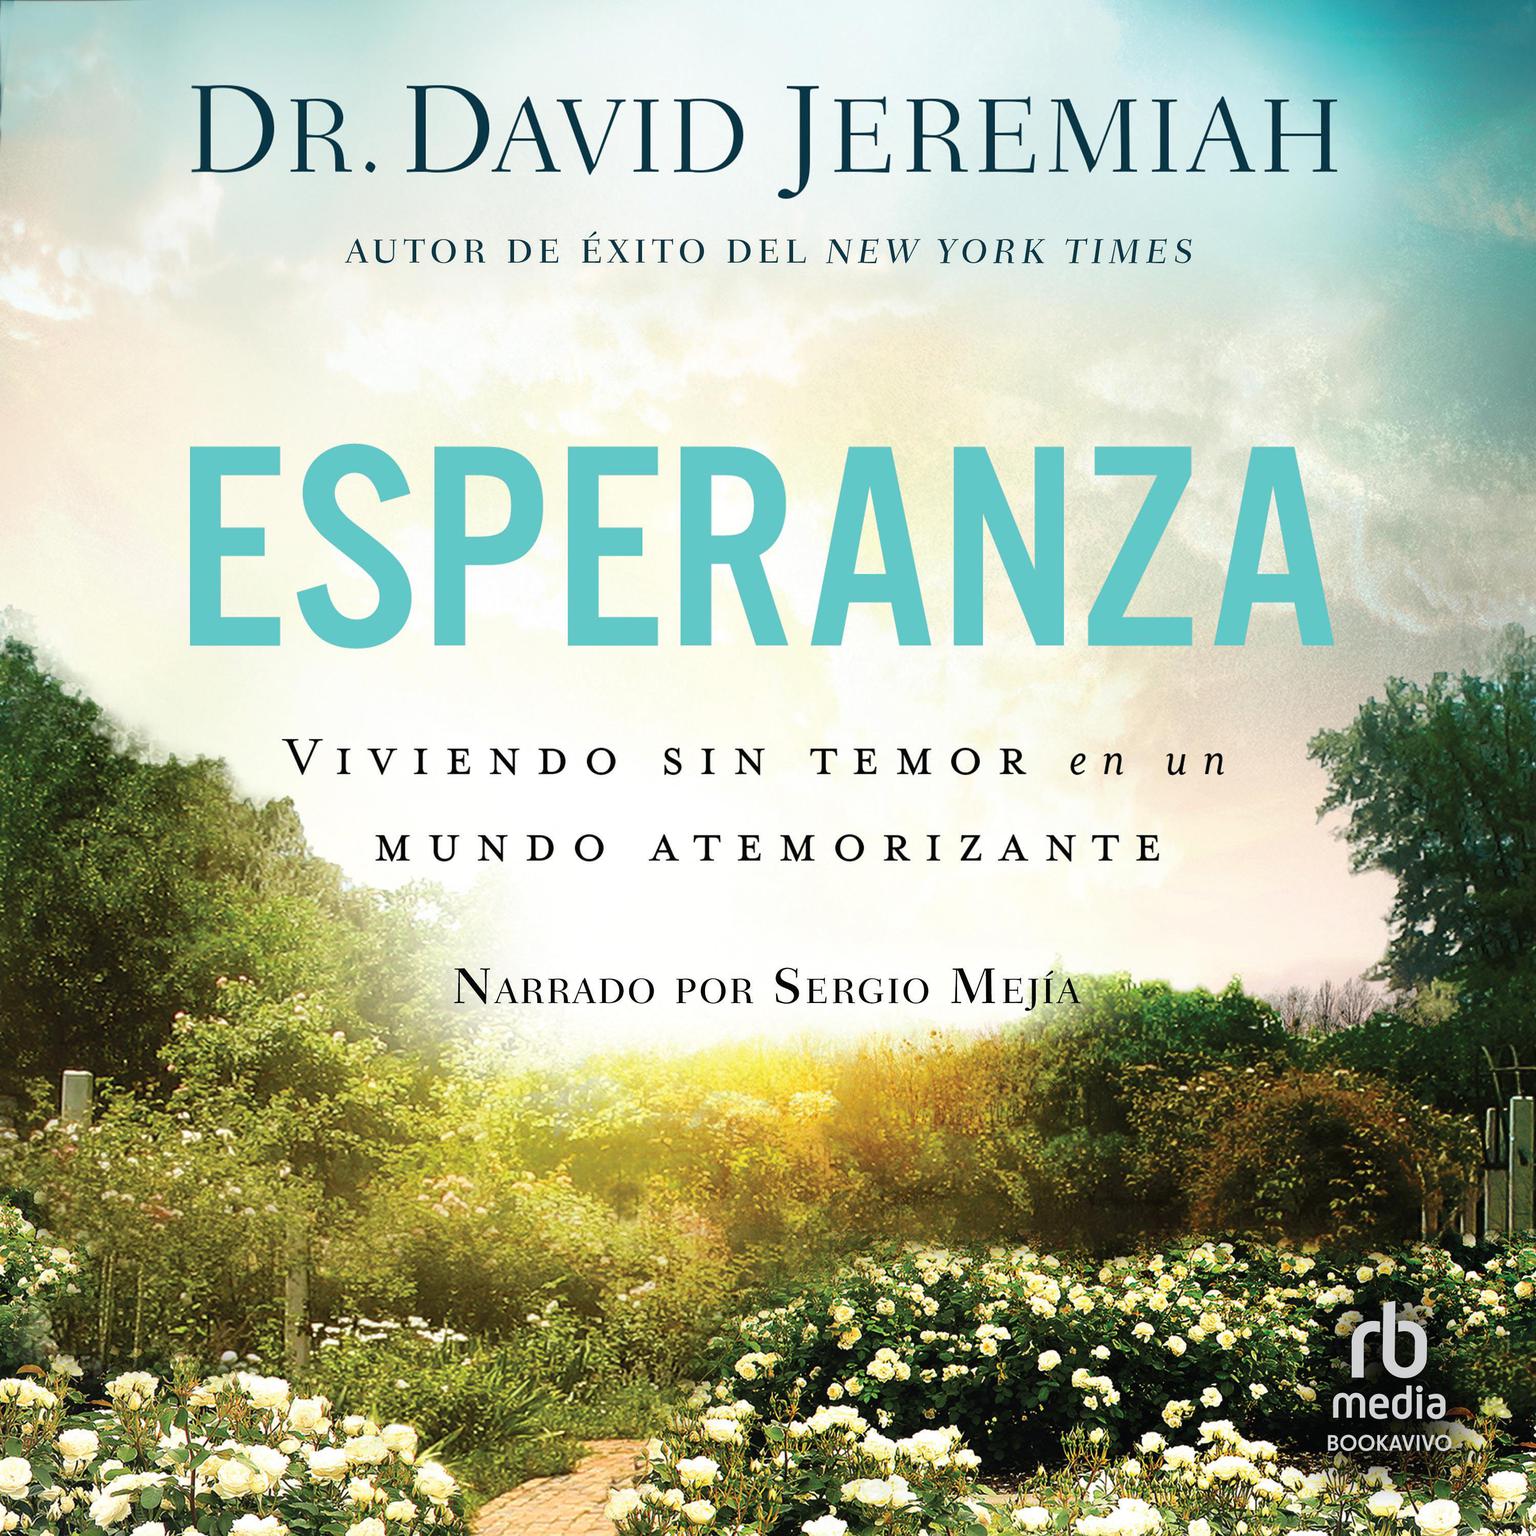 Esperanza: Viviendo sin temor en un mundo atemorizante (Living Fearlessly in a Scary World) Audiobook, by David Jeremiah